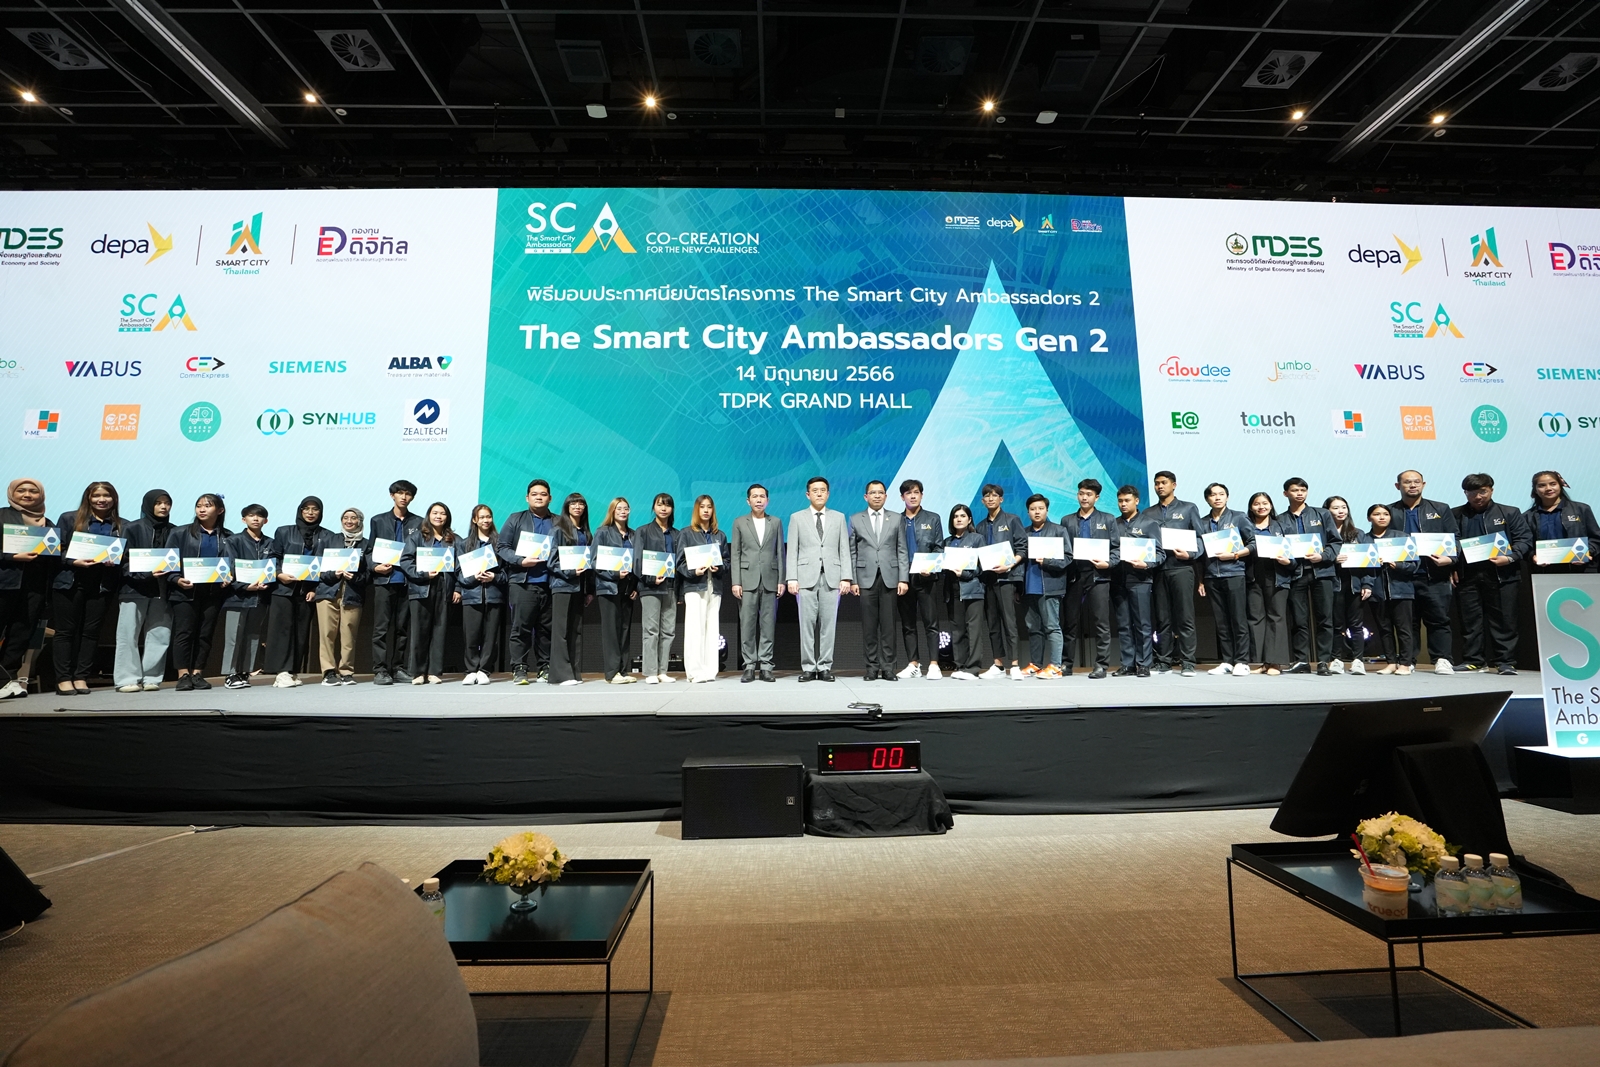 นักดิจิทัลพัฒนาเมือง ผลสำเร็จจากโครงการ The Smart City Ambassadors รุ่นที่ 2 โดย ดีอีเอส - ดีป้า